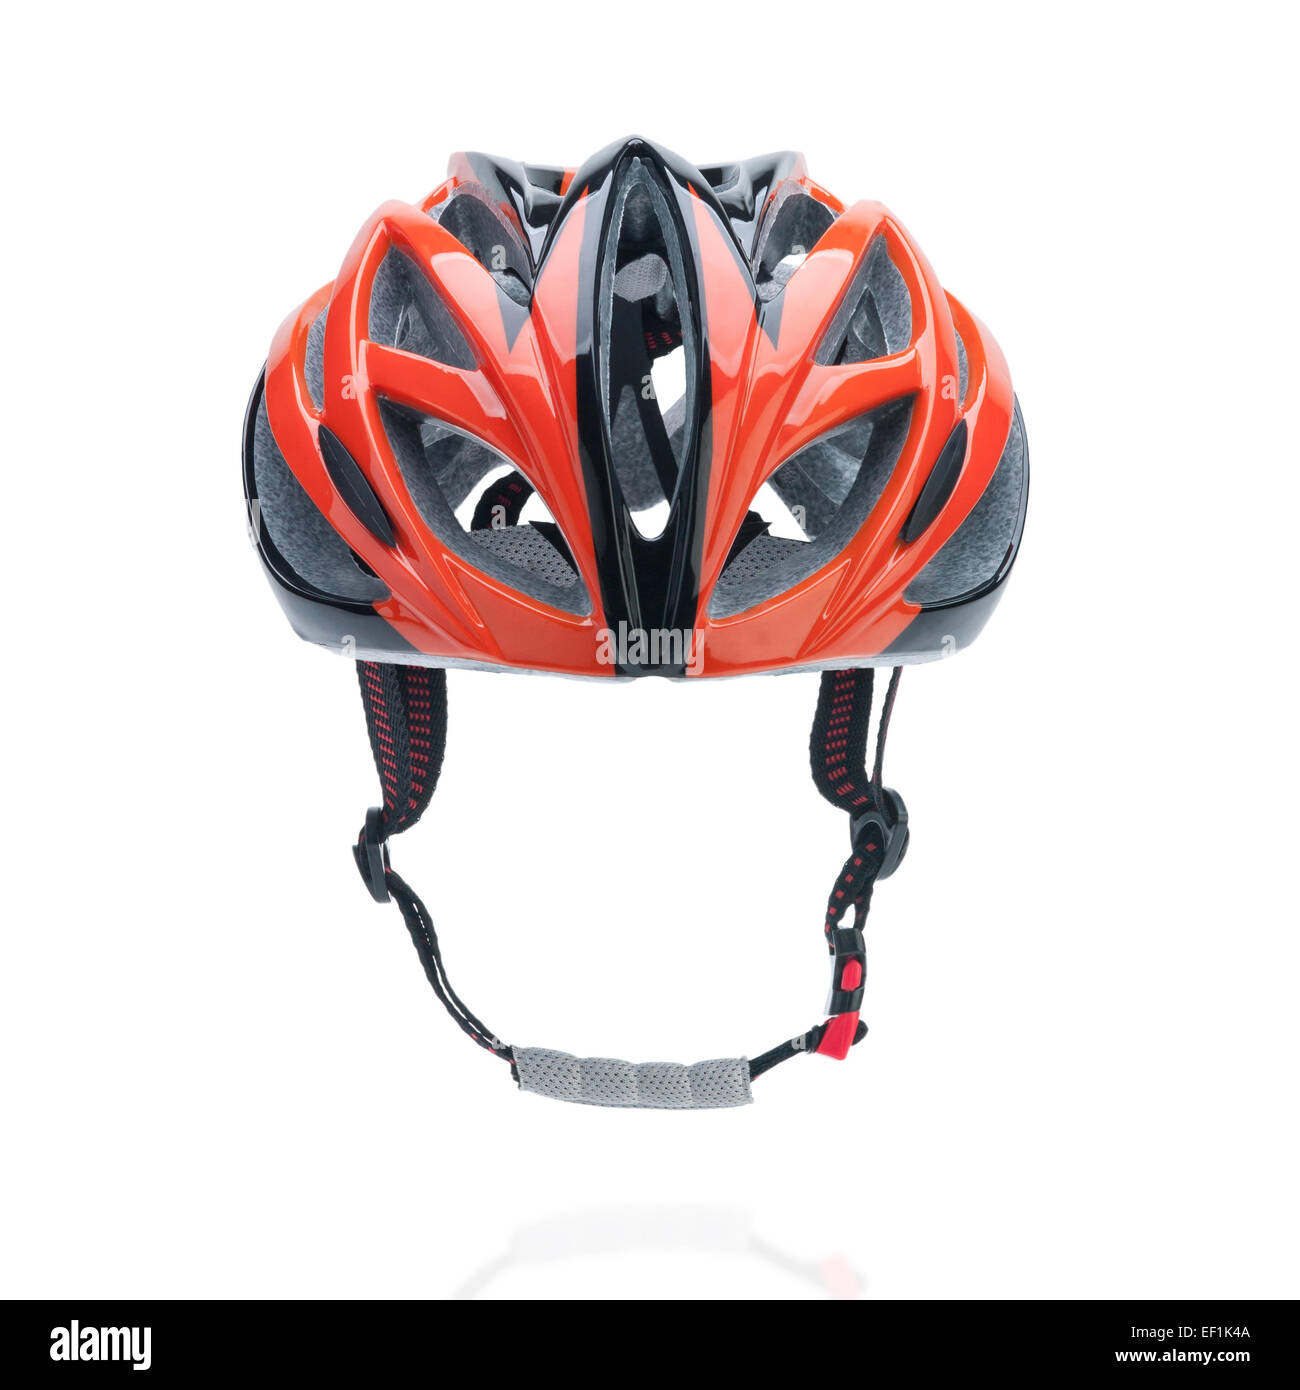 Fahrrad Mountain Bike Helm isoliert auf weiss Stockfoto